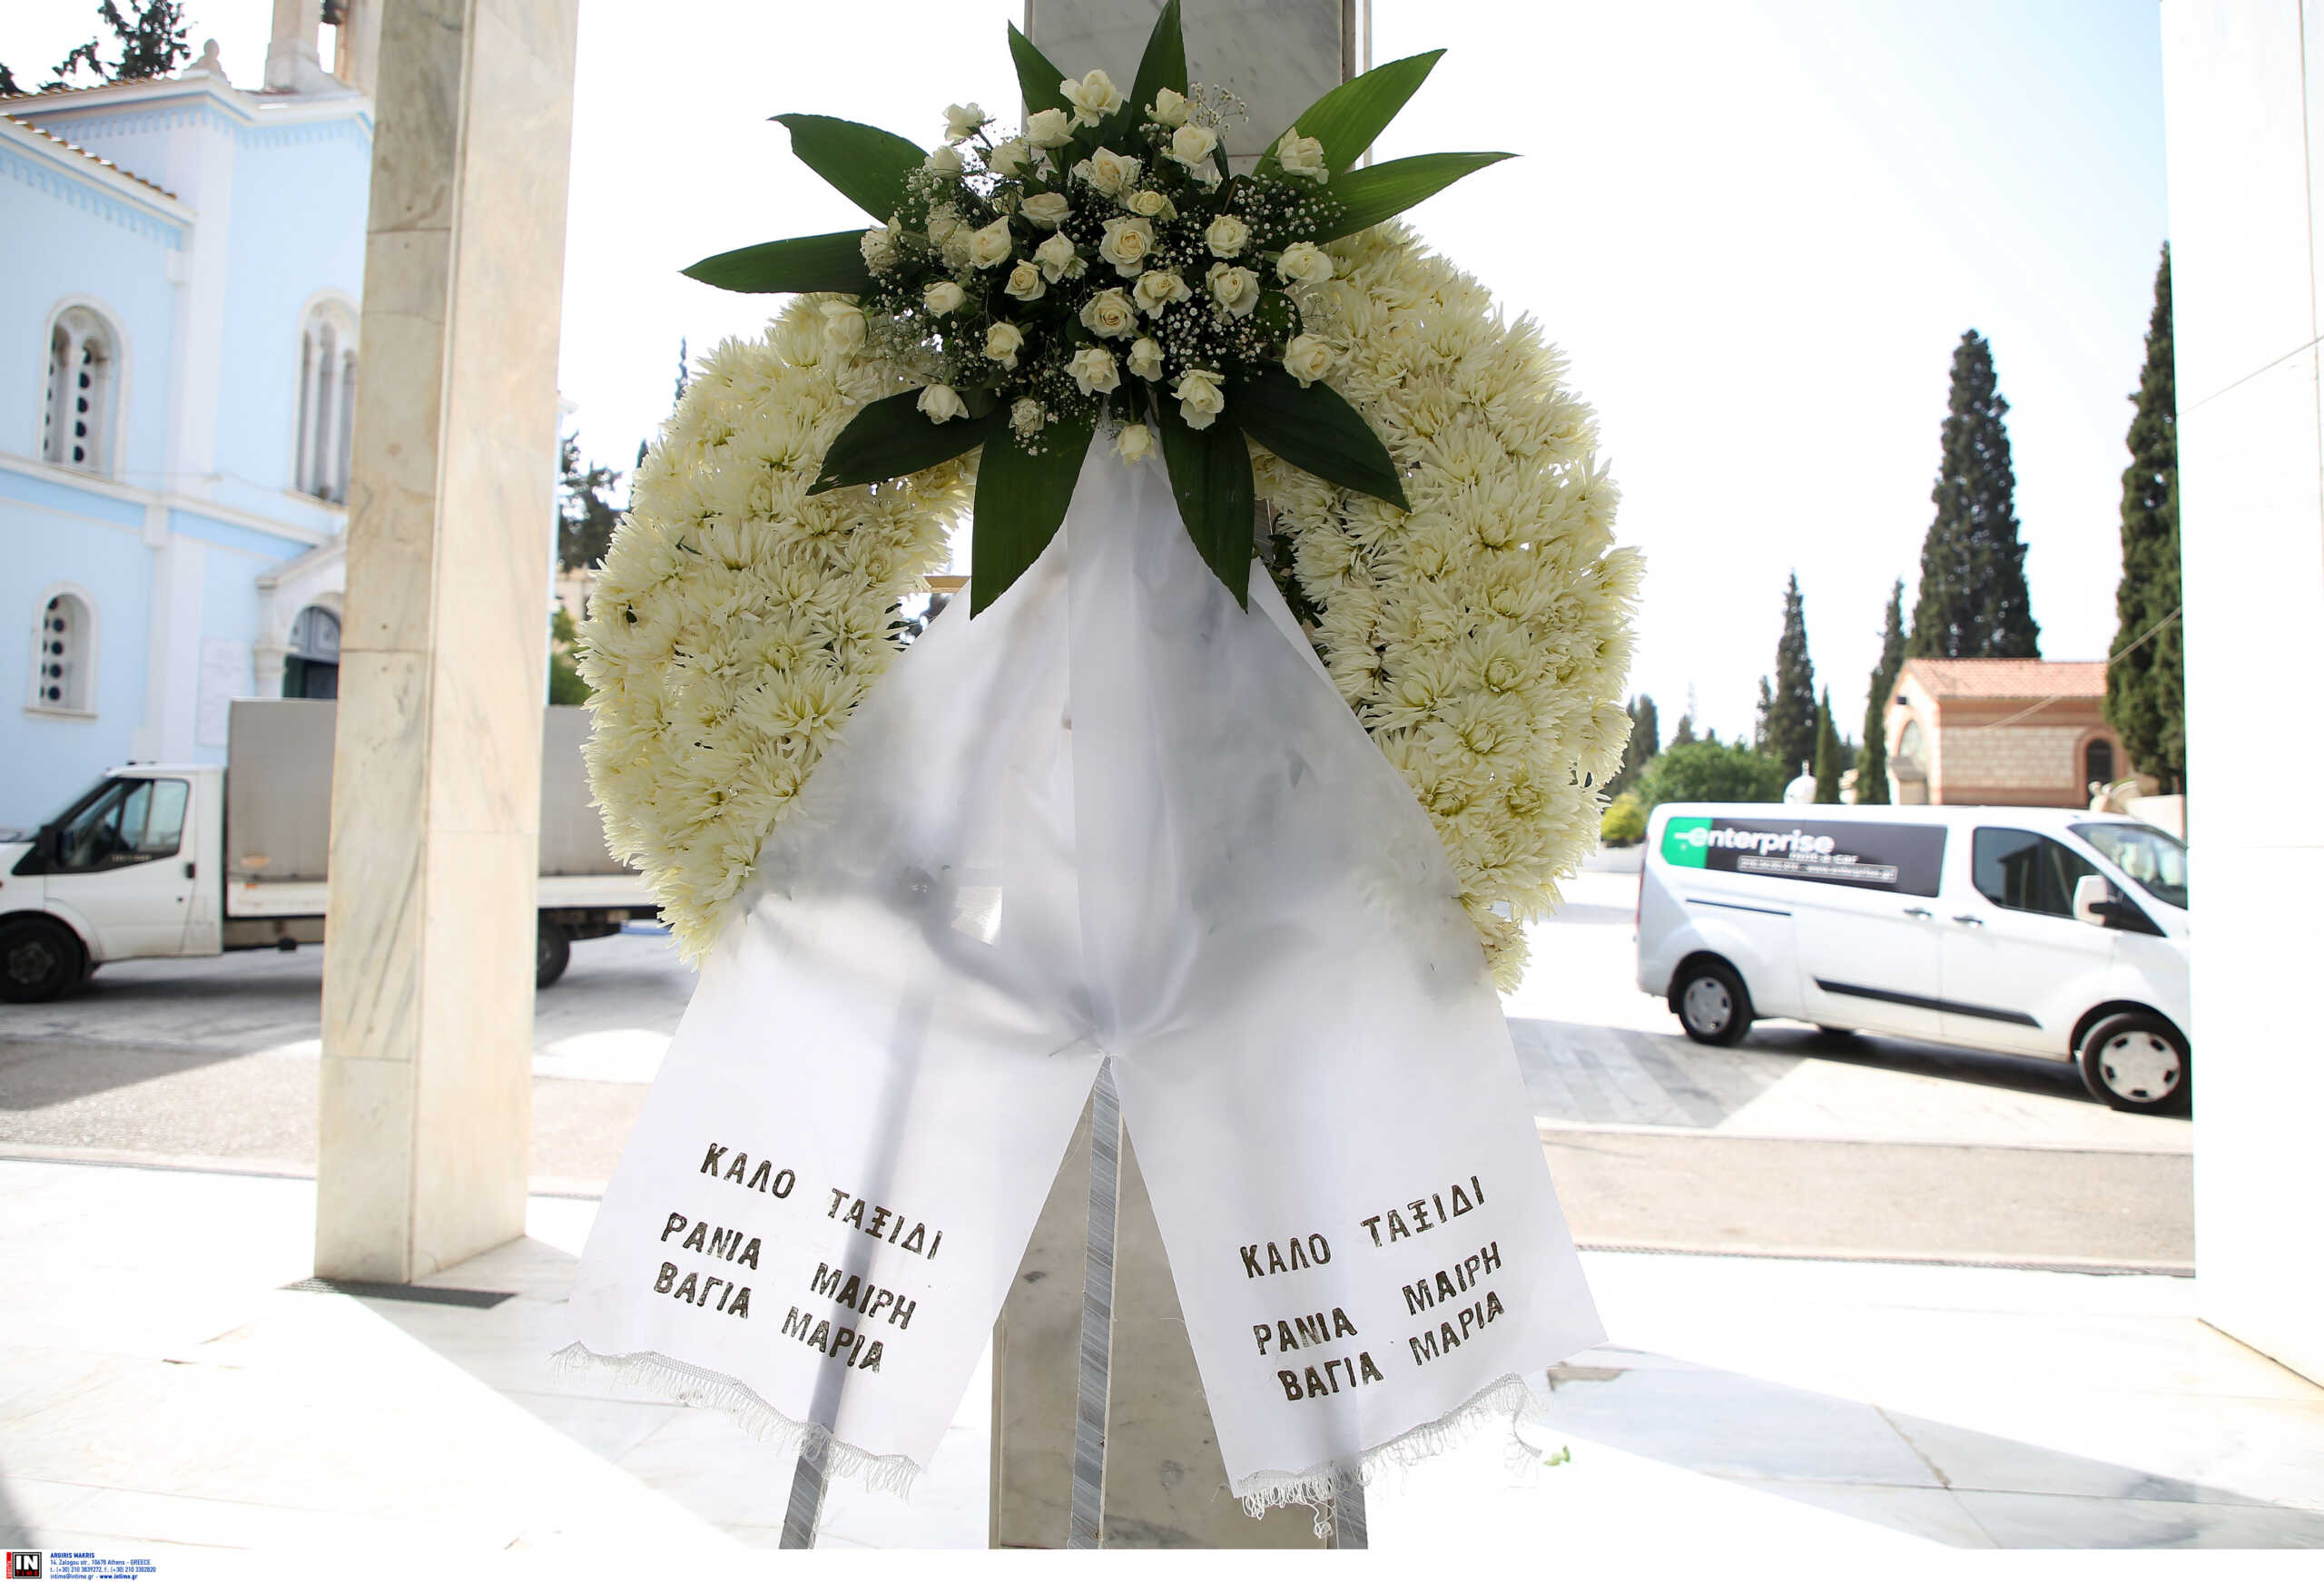 Μαριάννα Βαρδινογιάννη: Σε στενό οικογενειακό κύκλο η κηδεία της - Ταφή στο Α' Νεκροταφείο Αθηνών